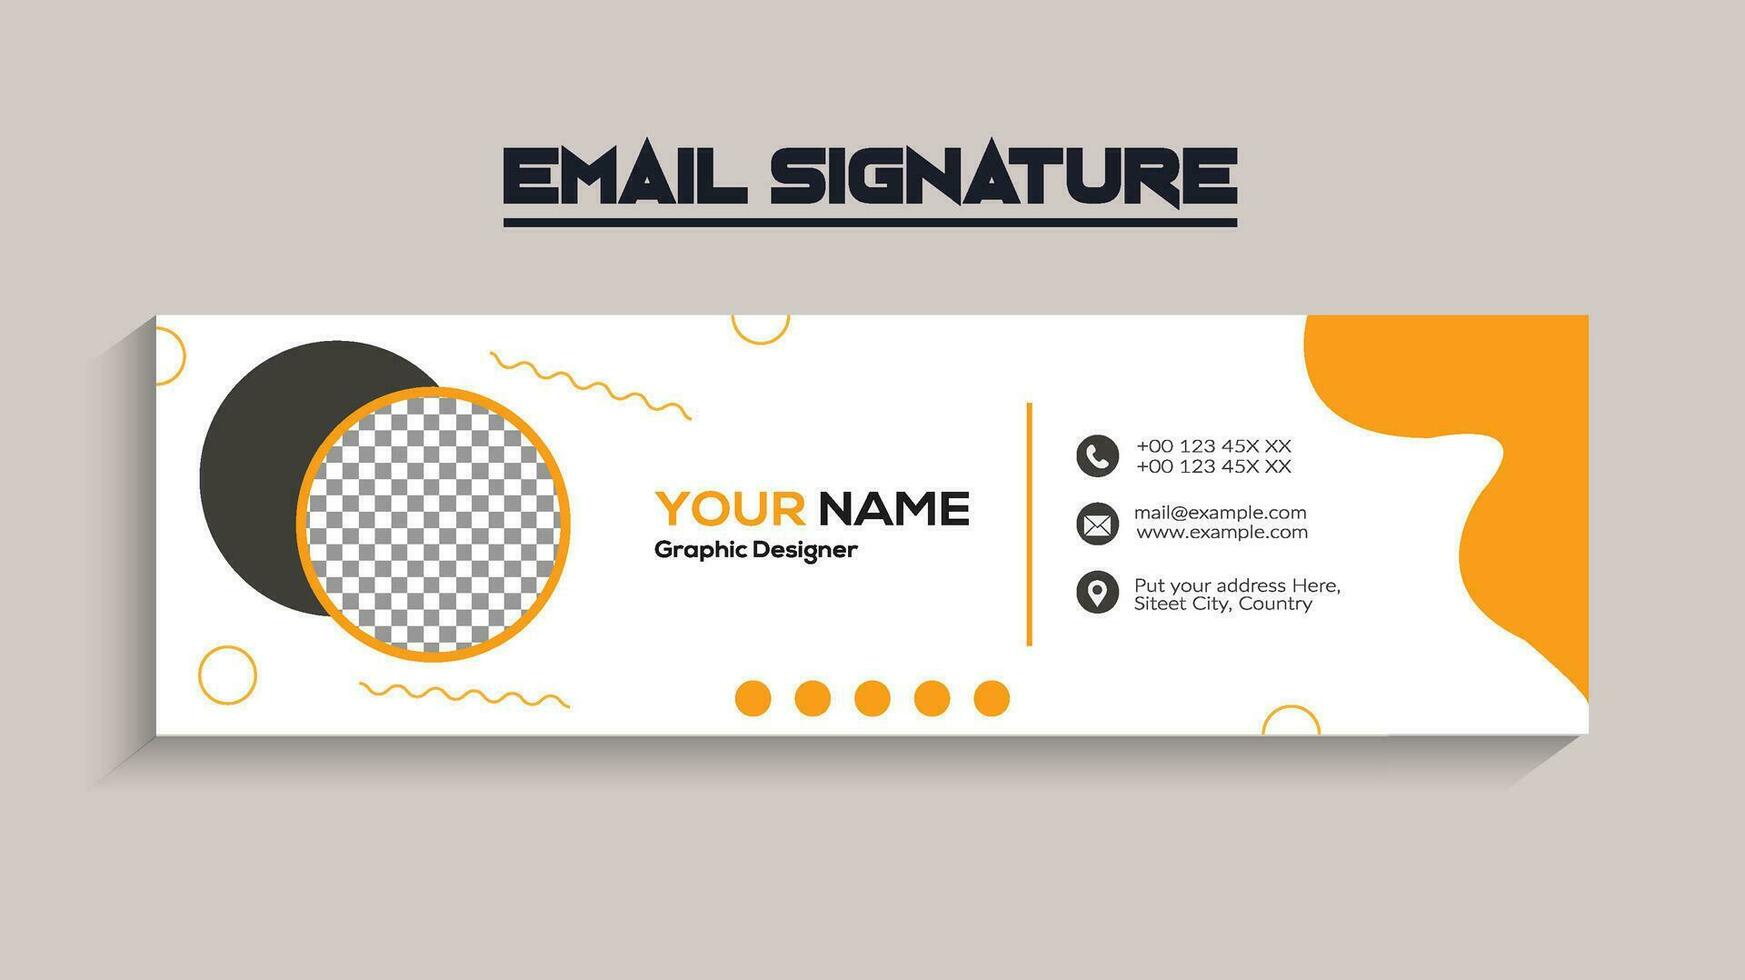 entreprise, moderne et professionnel email signature. vecteur